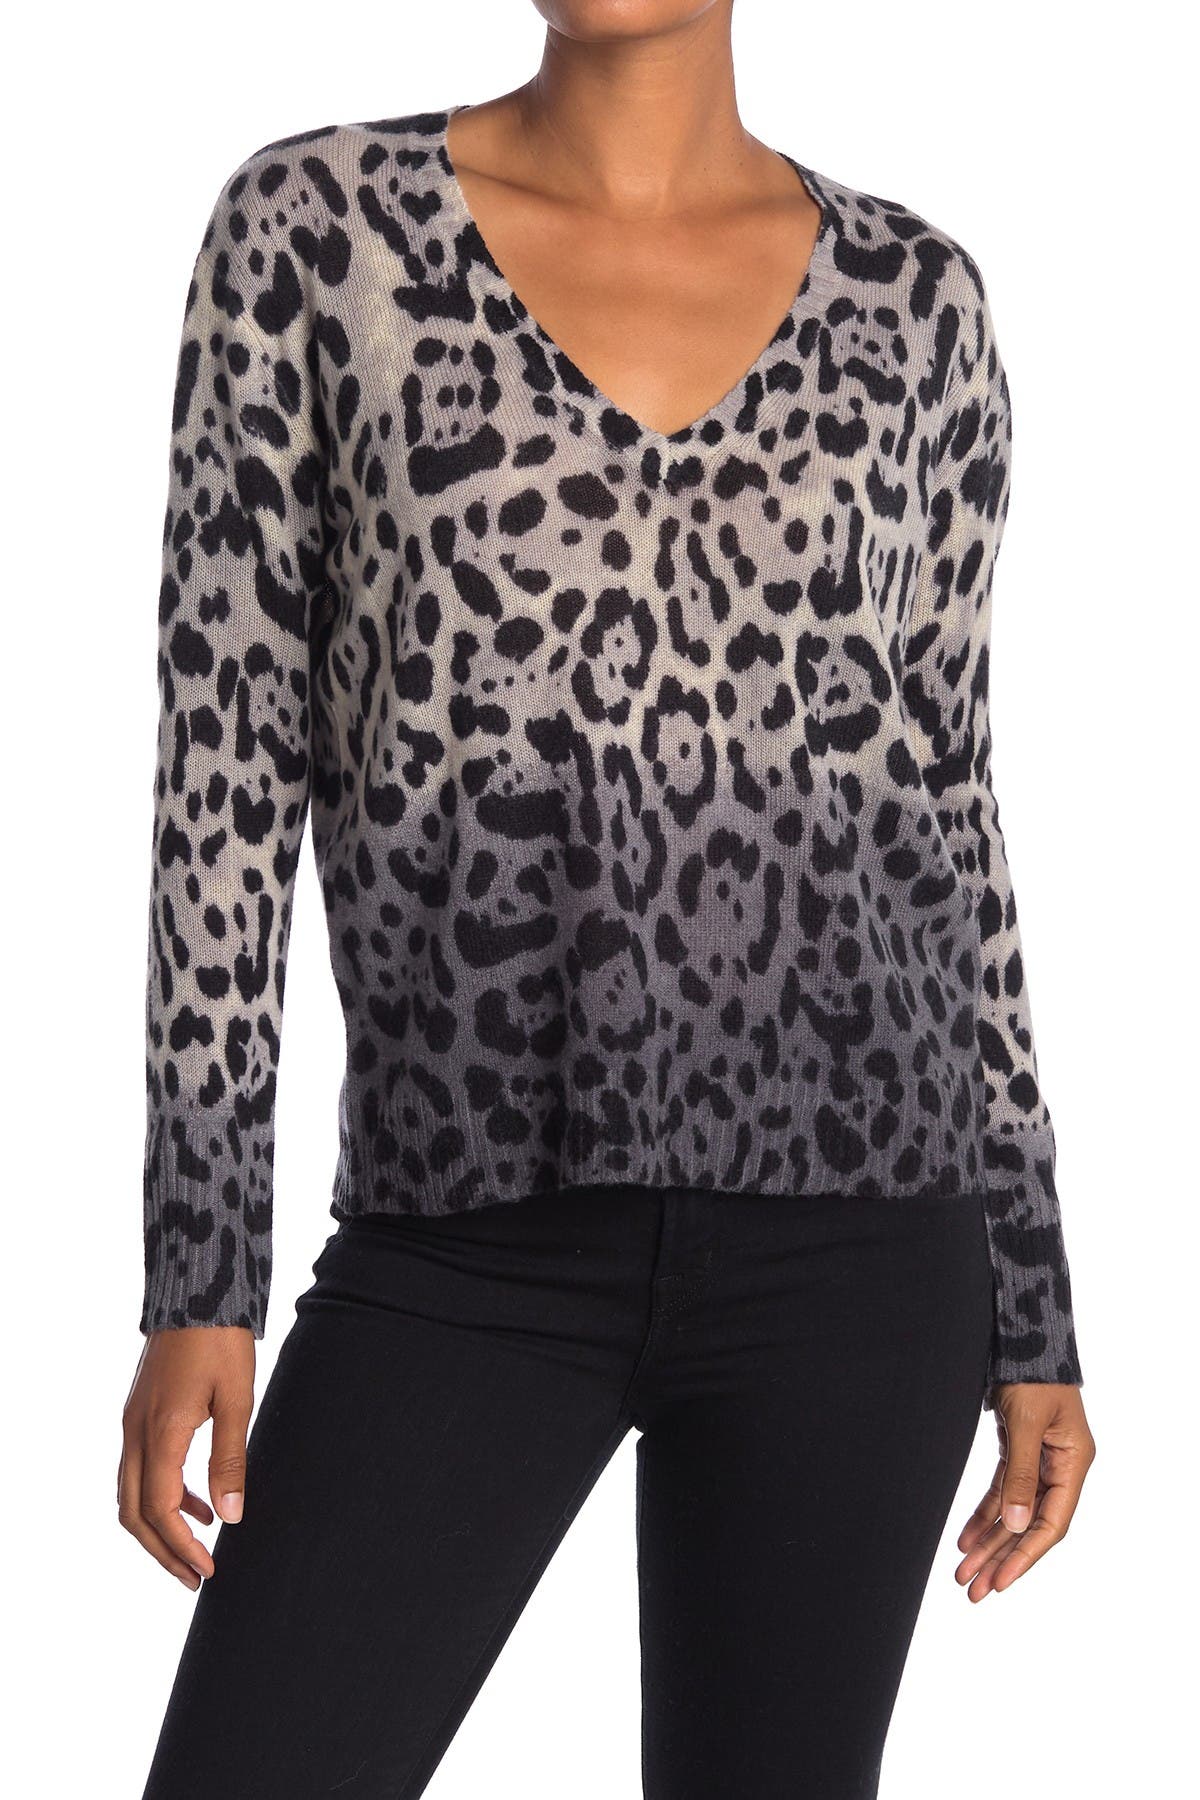 360 Cashmere | Lauren V-Neck Leopard Print Cashmere Sweater | Nordstrom ...